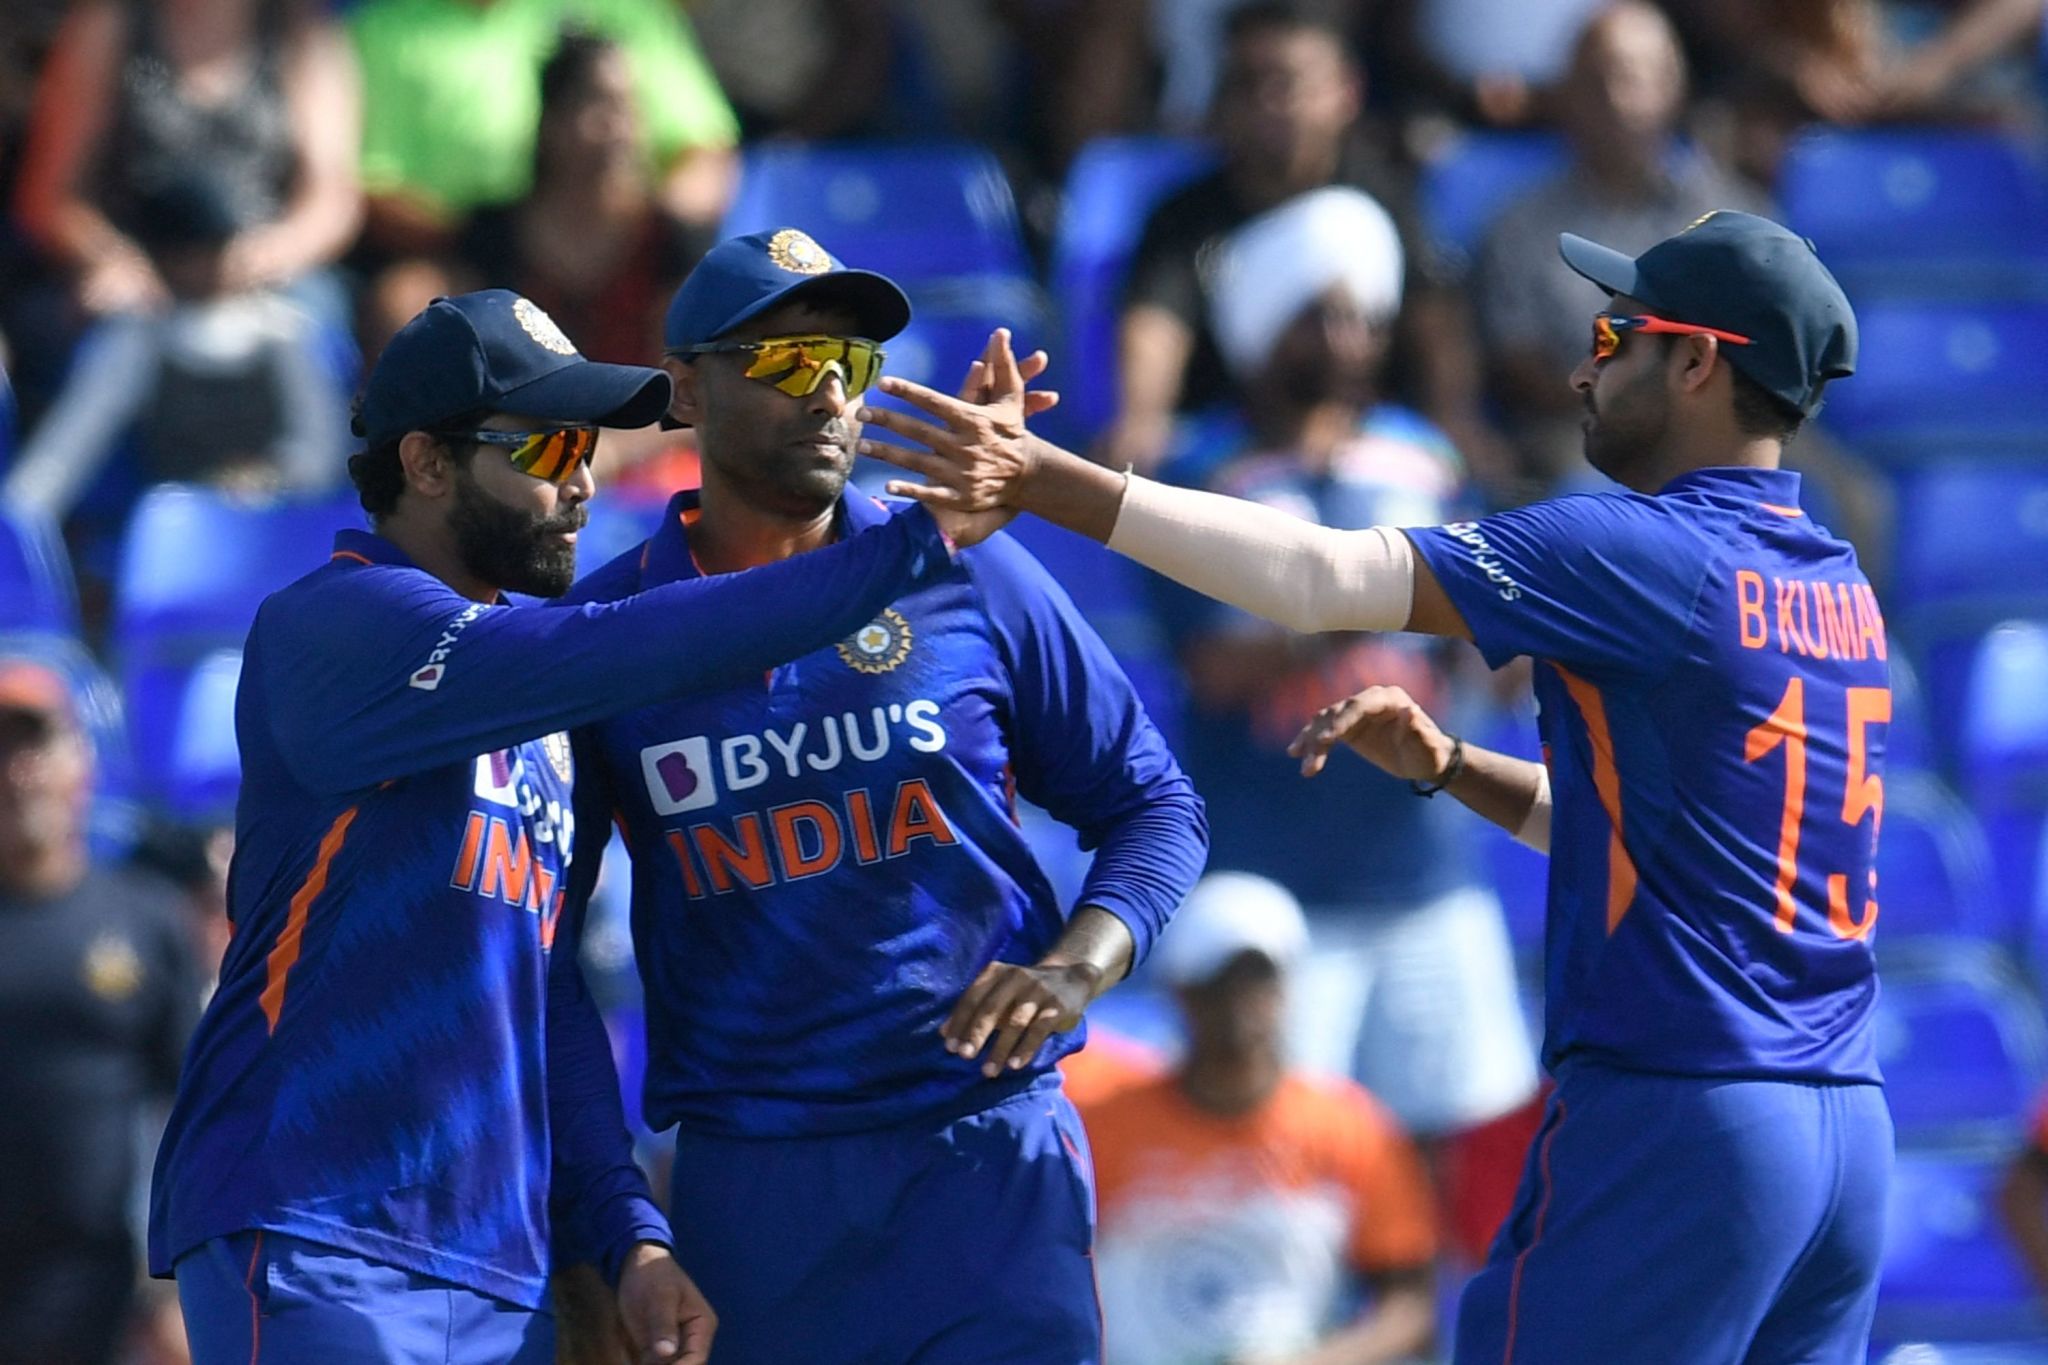 Hindistan XI 3. T20 Oynarken: Shreyas Iyer'in yerini alacak Deepak Hooda, Kuldeep Yadav 3. T20'de oynayacak mı?  Hindistan - WestIndies 3. T20 Canlı Güncellemelerini Takip Edin